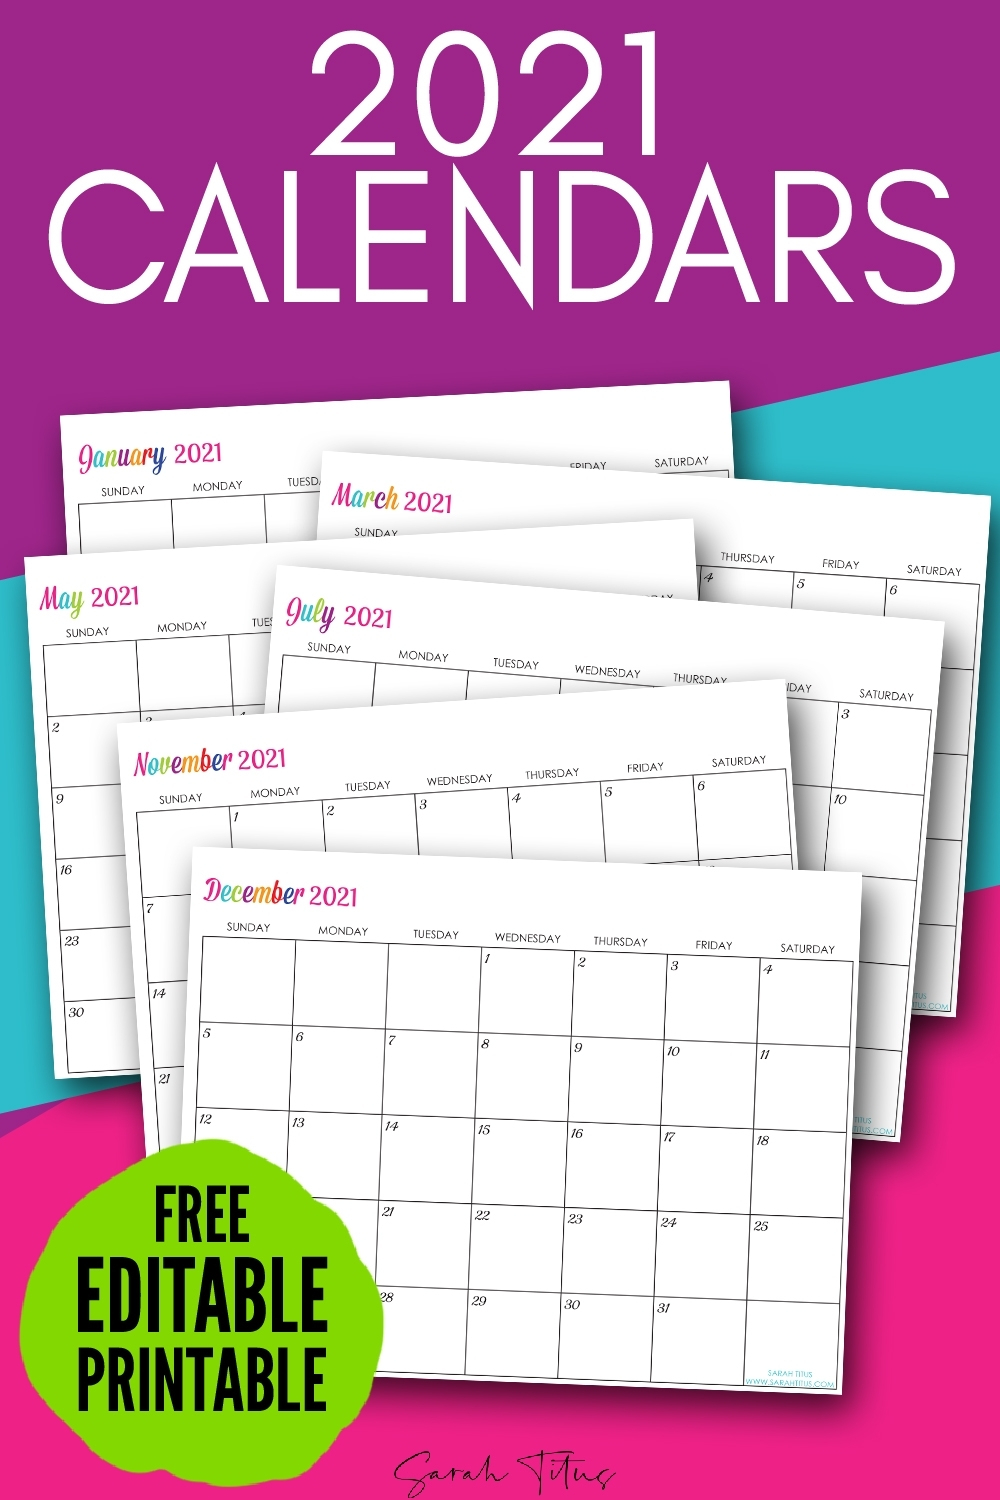 2020 Calendar Free Printable Imom - Calendar Inspiration